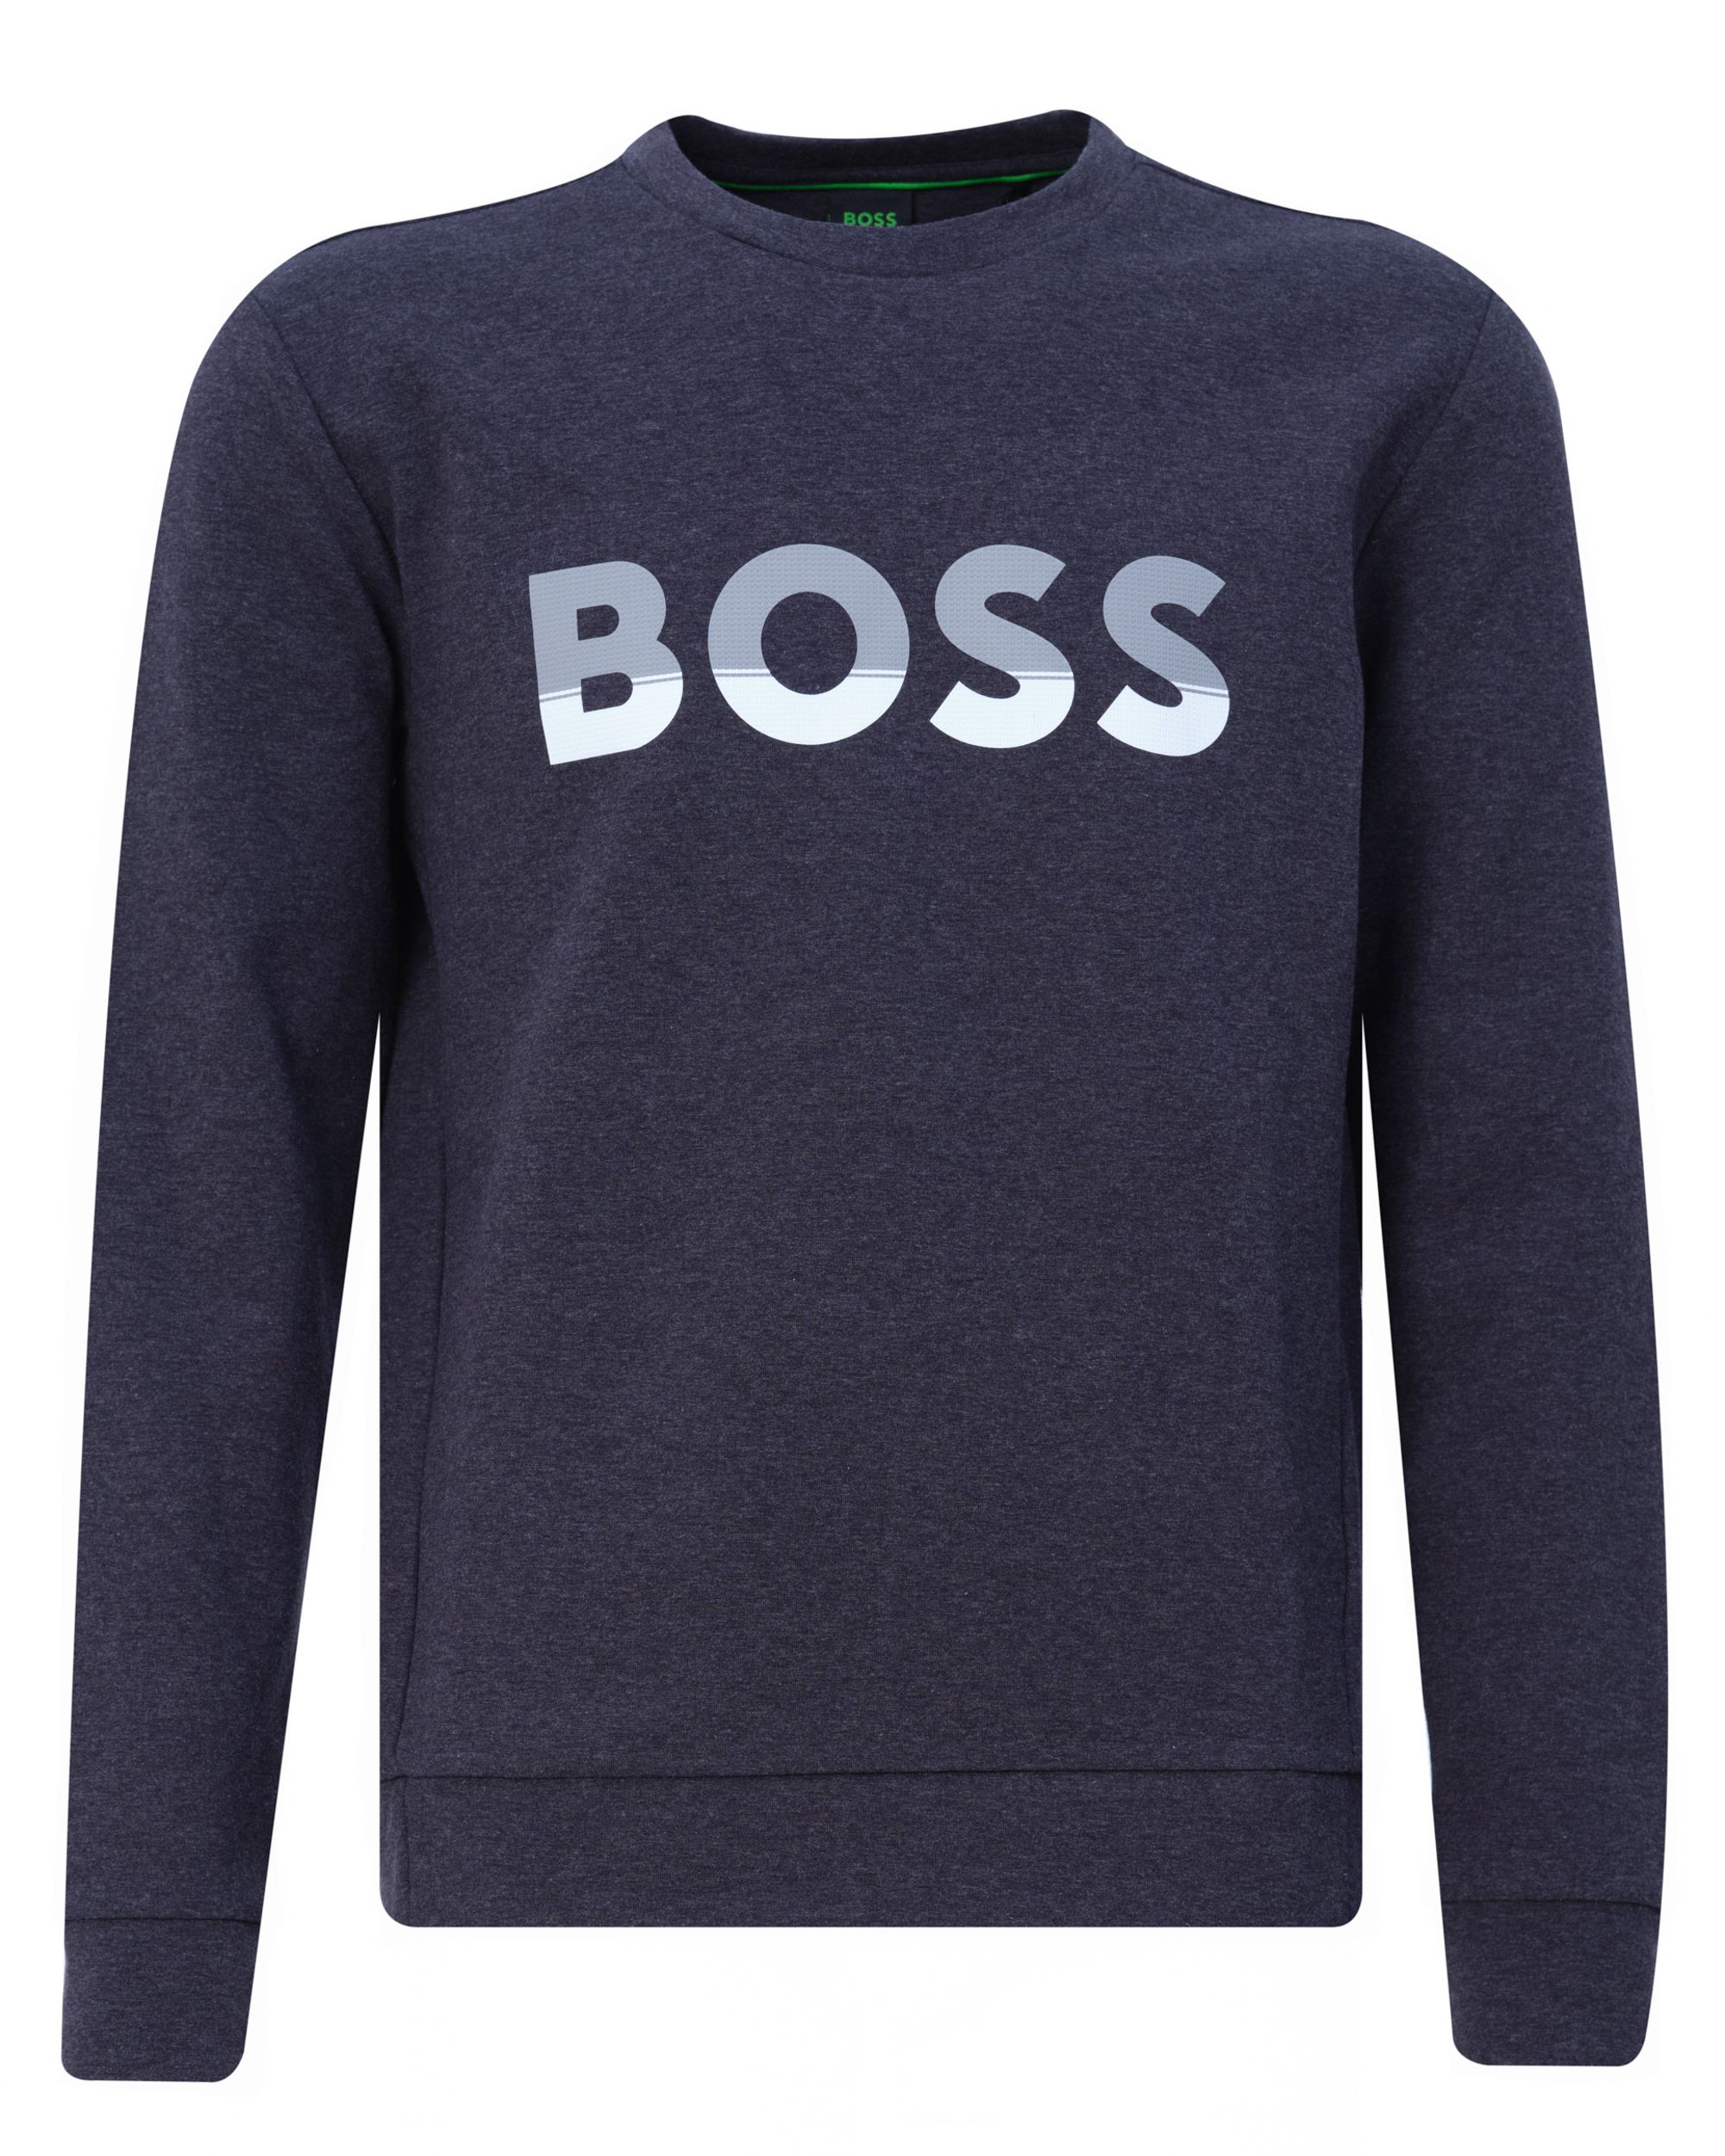 Hugo Boss Leisure T-shirt KM Grijs 082309-001-L